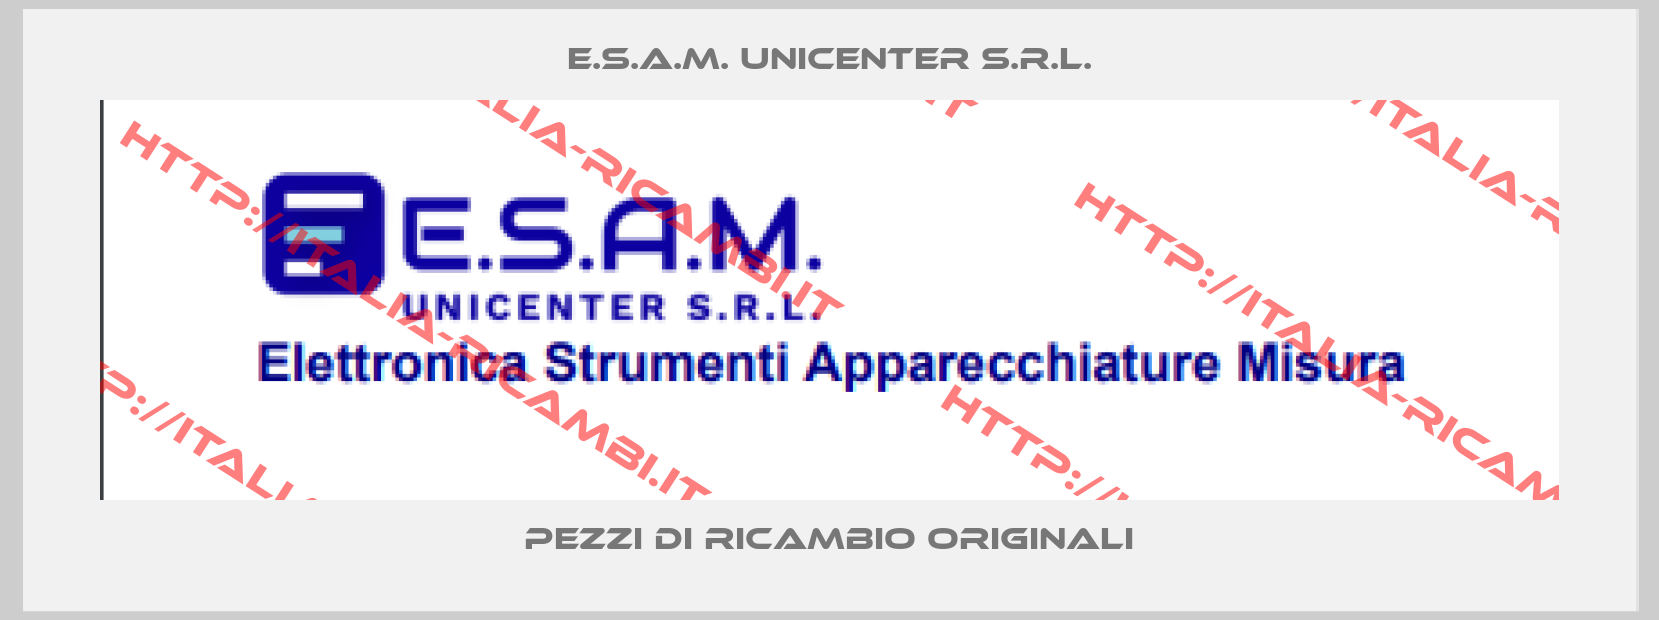 E.S.A.M. unicenter s.r.l.